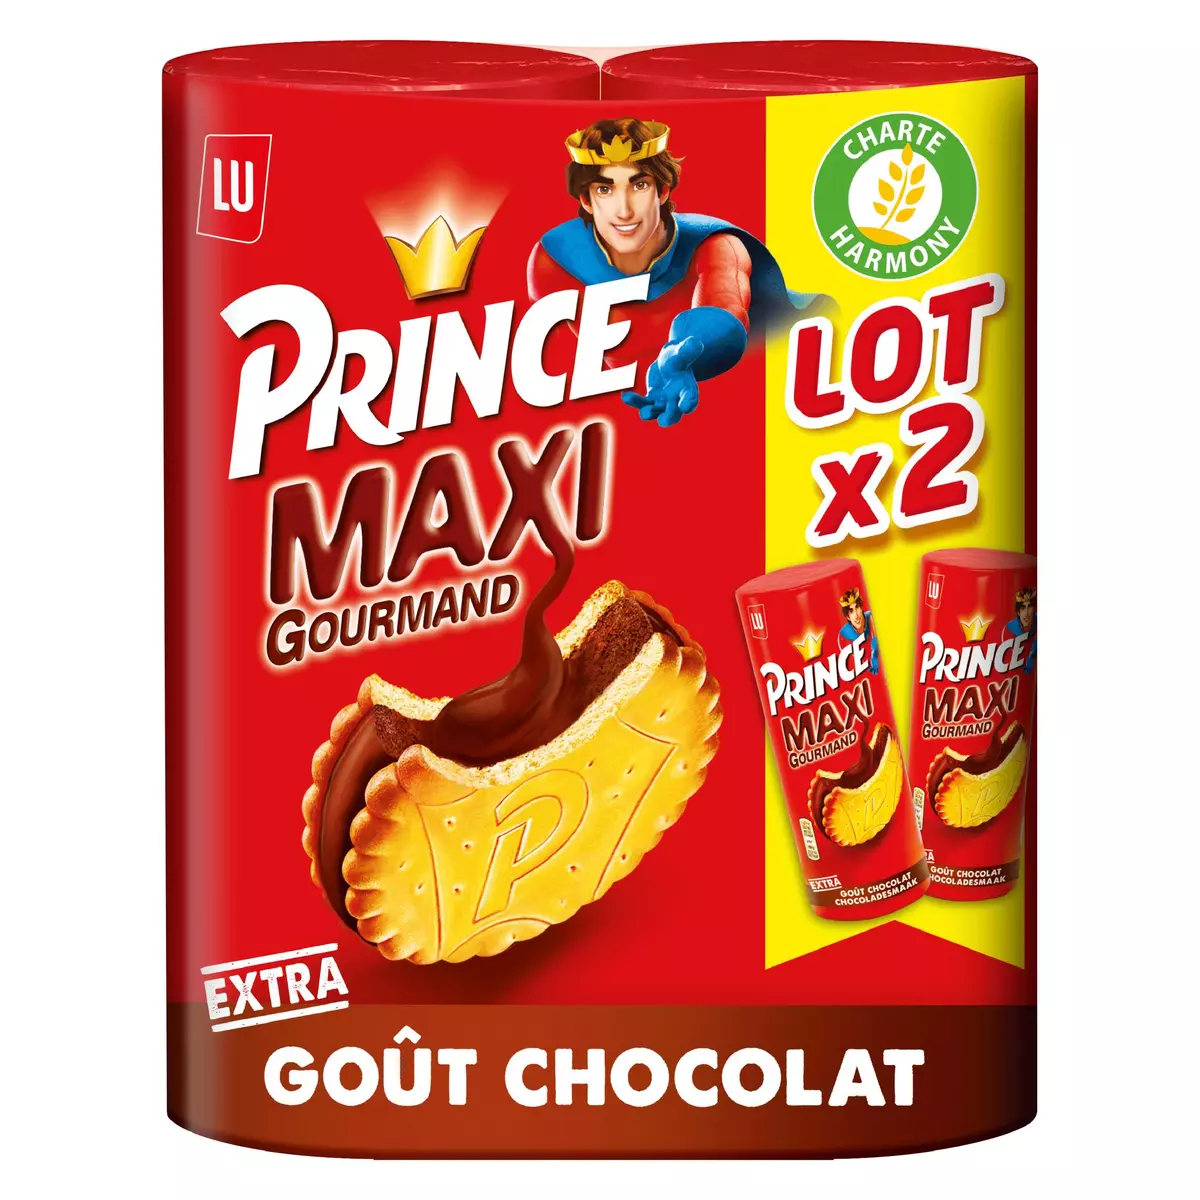 PRINCE Maxi gourmand biscuits fourrés au chocolat lot de 2 2x250g